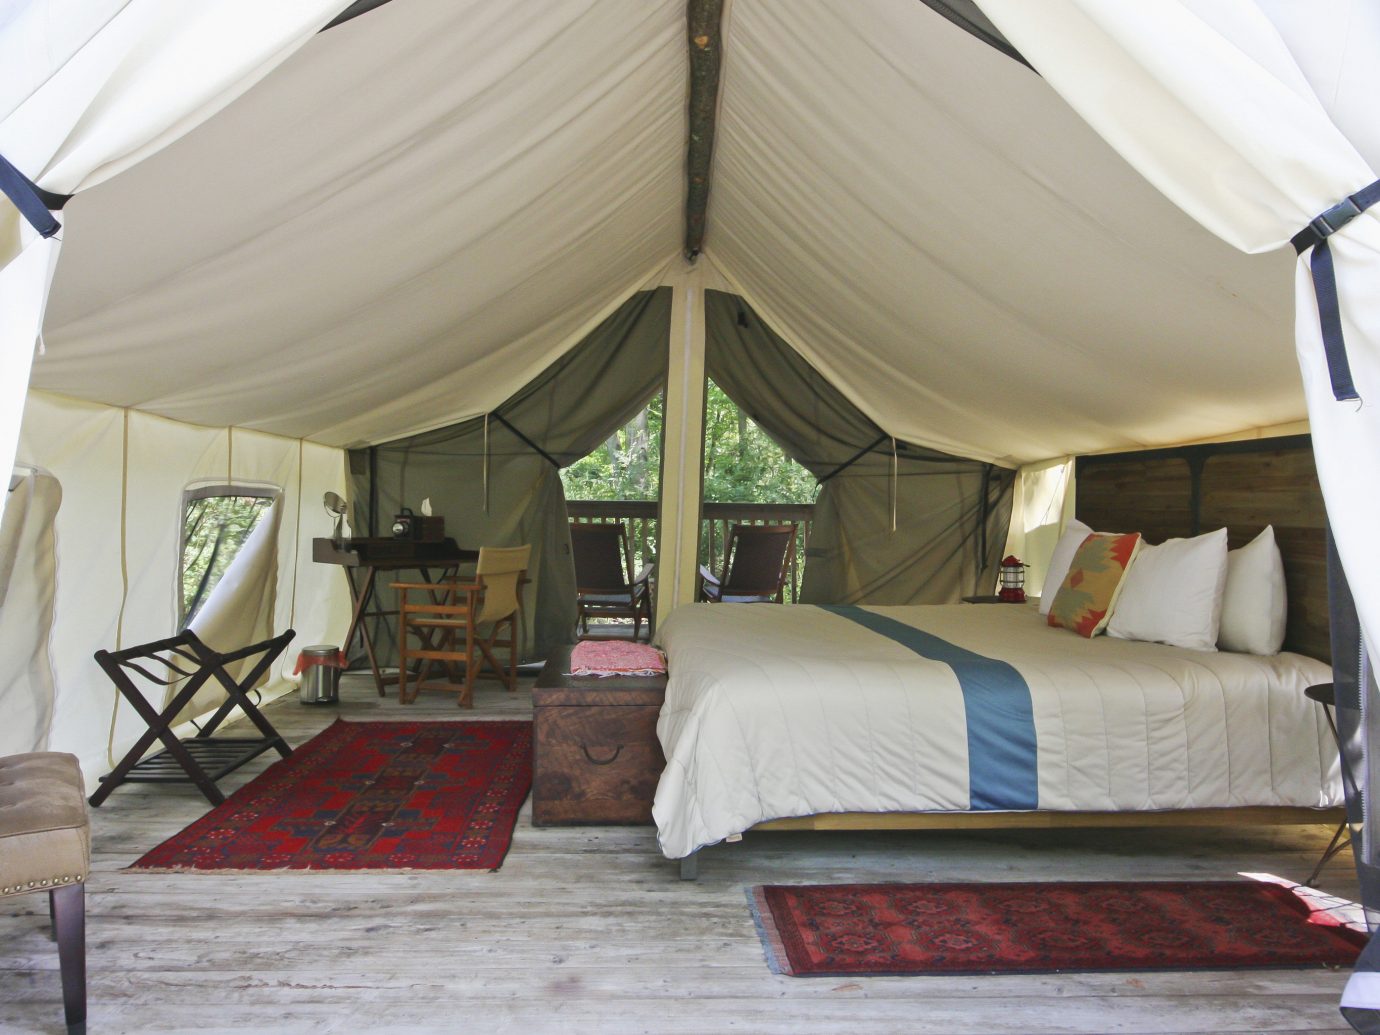 Glamping Outdoors + Adventure Weekend Getaways indoor floor tent room Bedroom camp estate outdoor object furniture